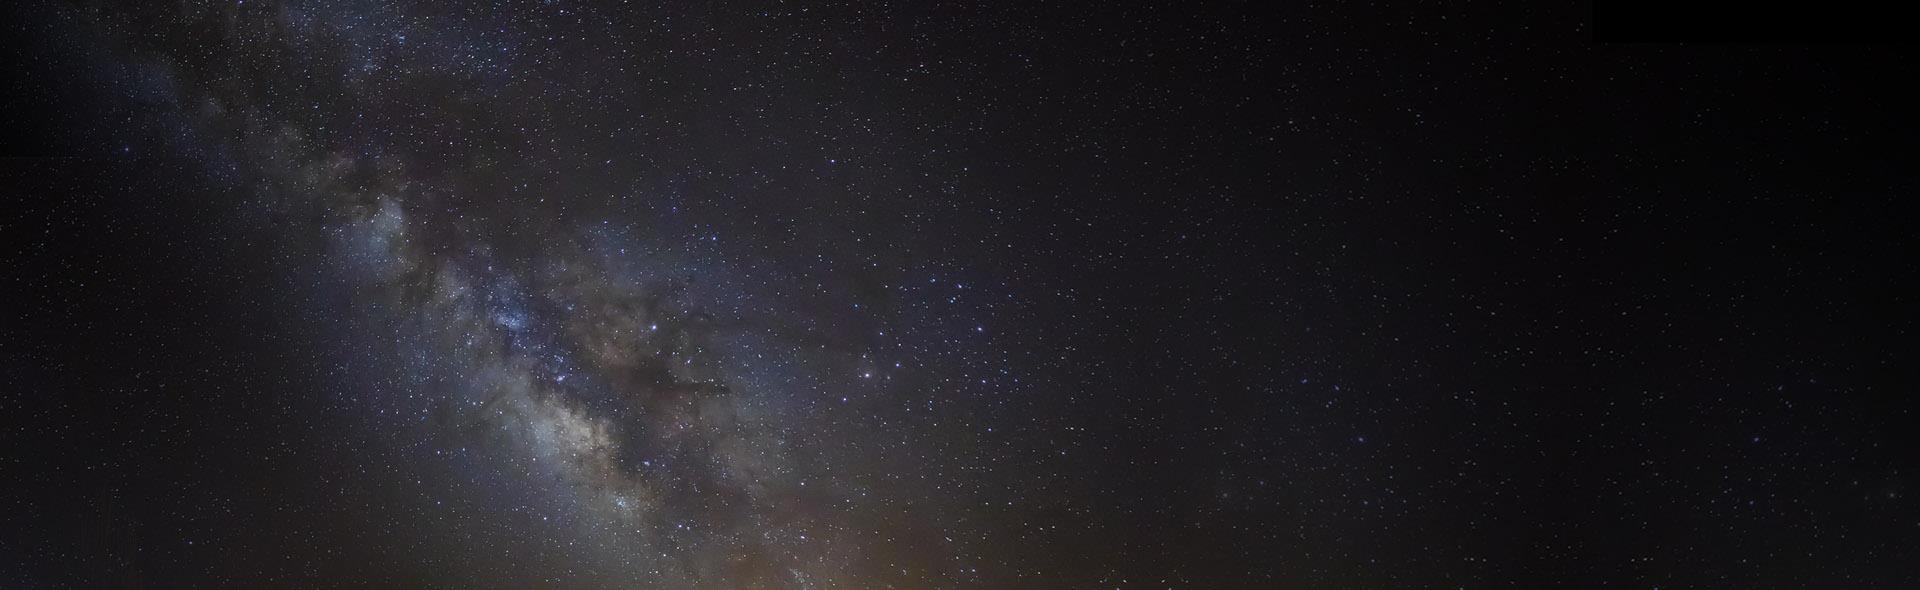 عکاسی از کهکشان راه شیری <br>Milky Way Galaxy Photography